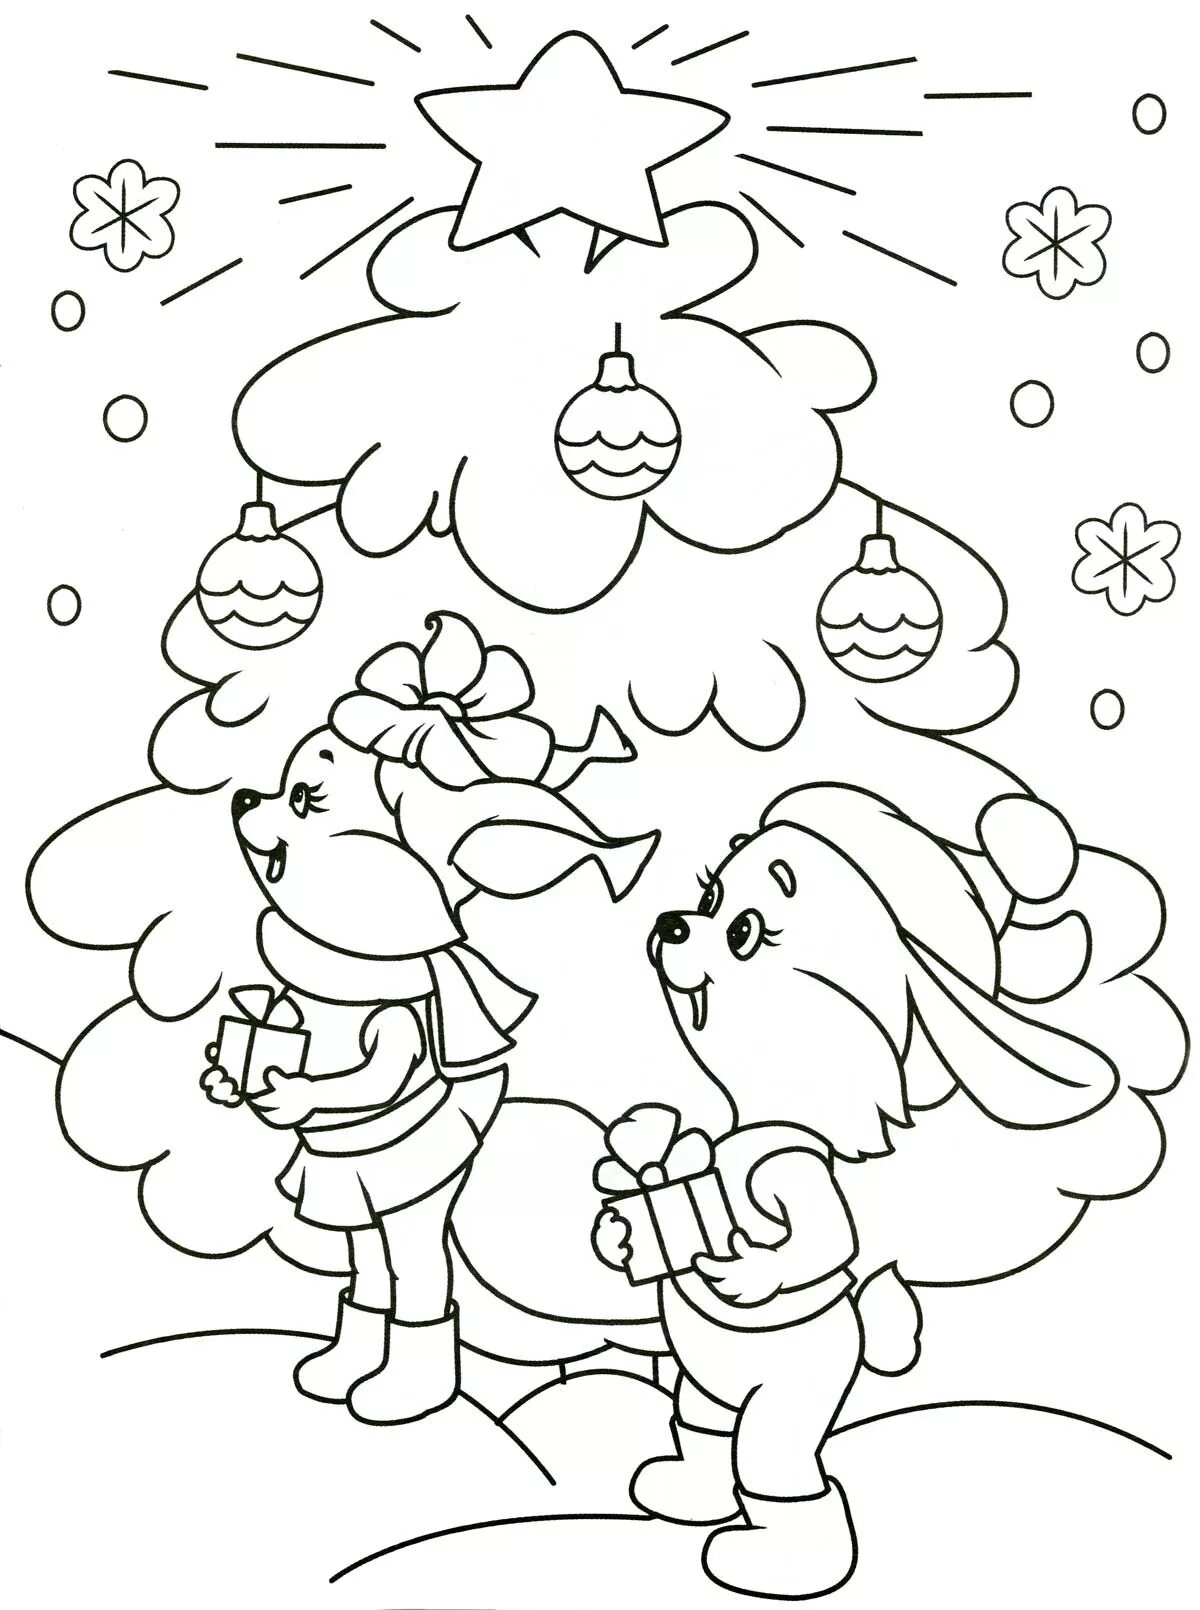 Shiny santa and bunny coloring book